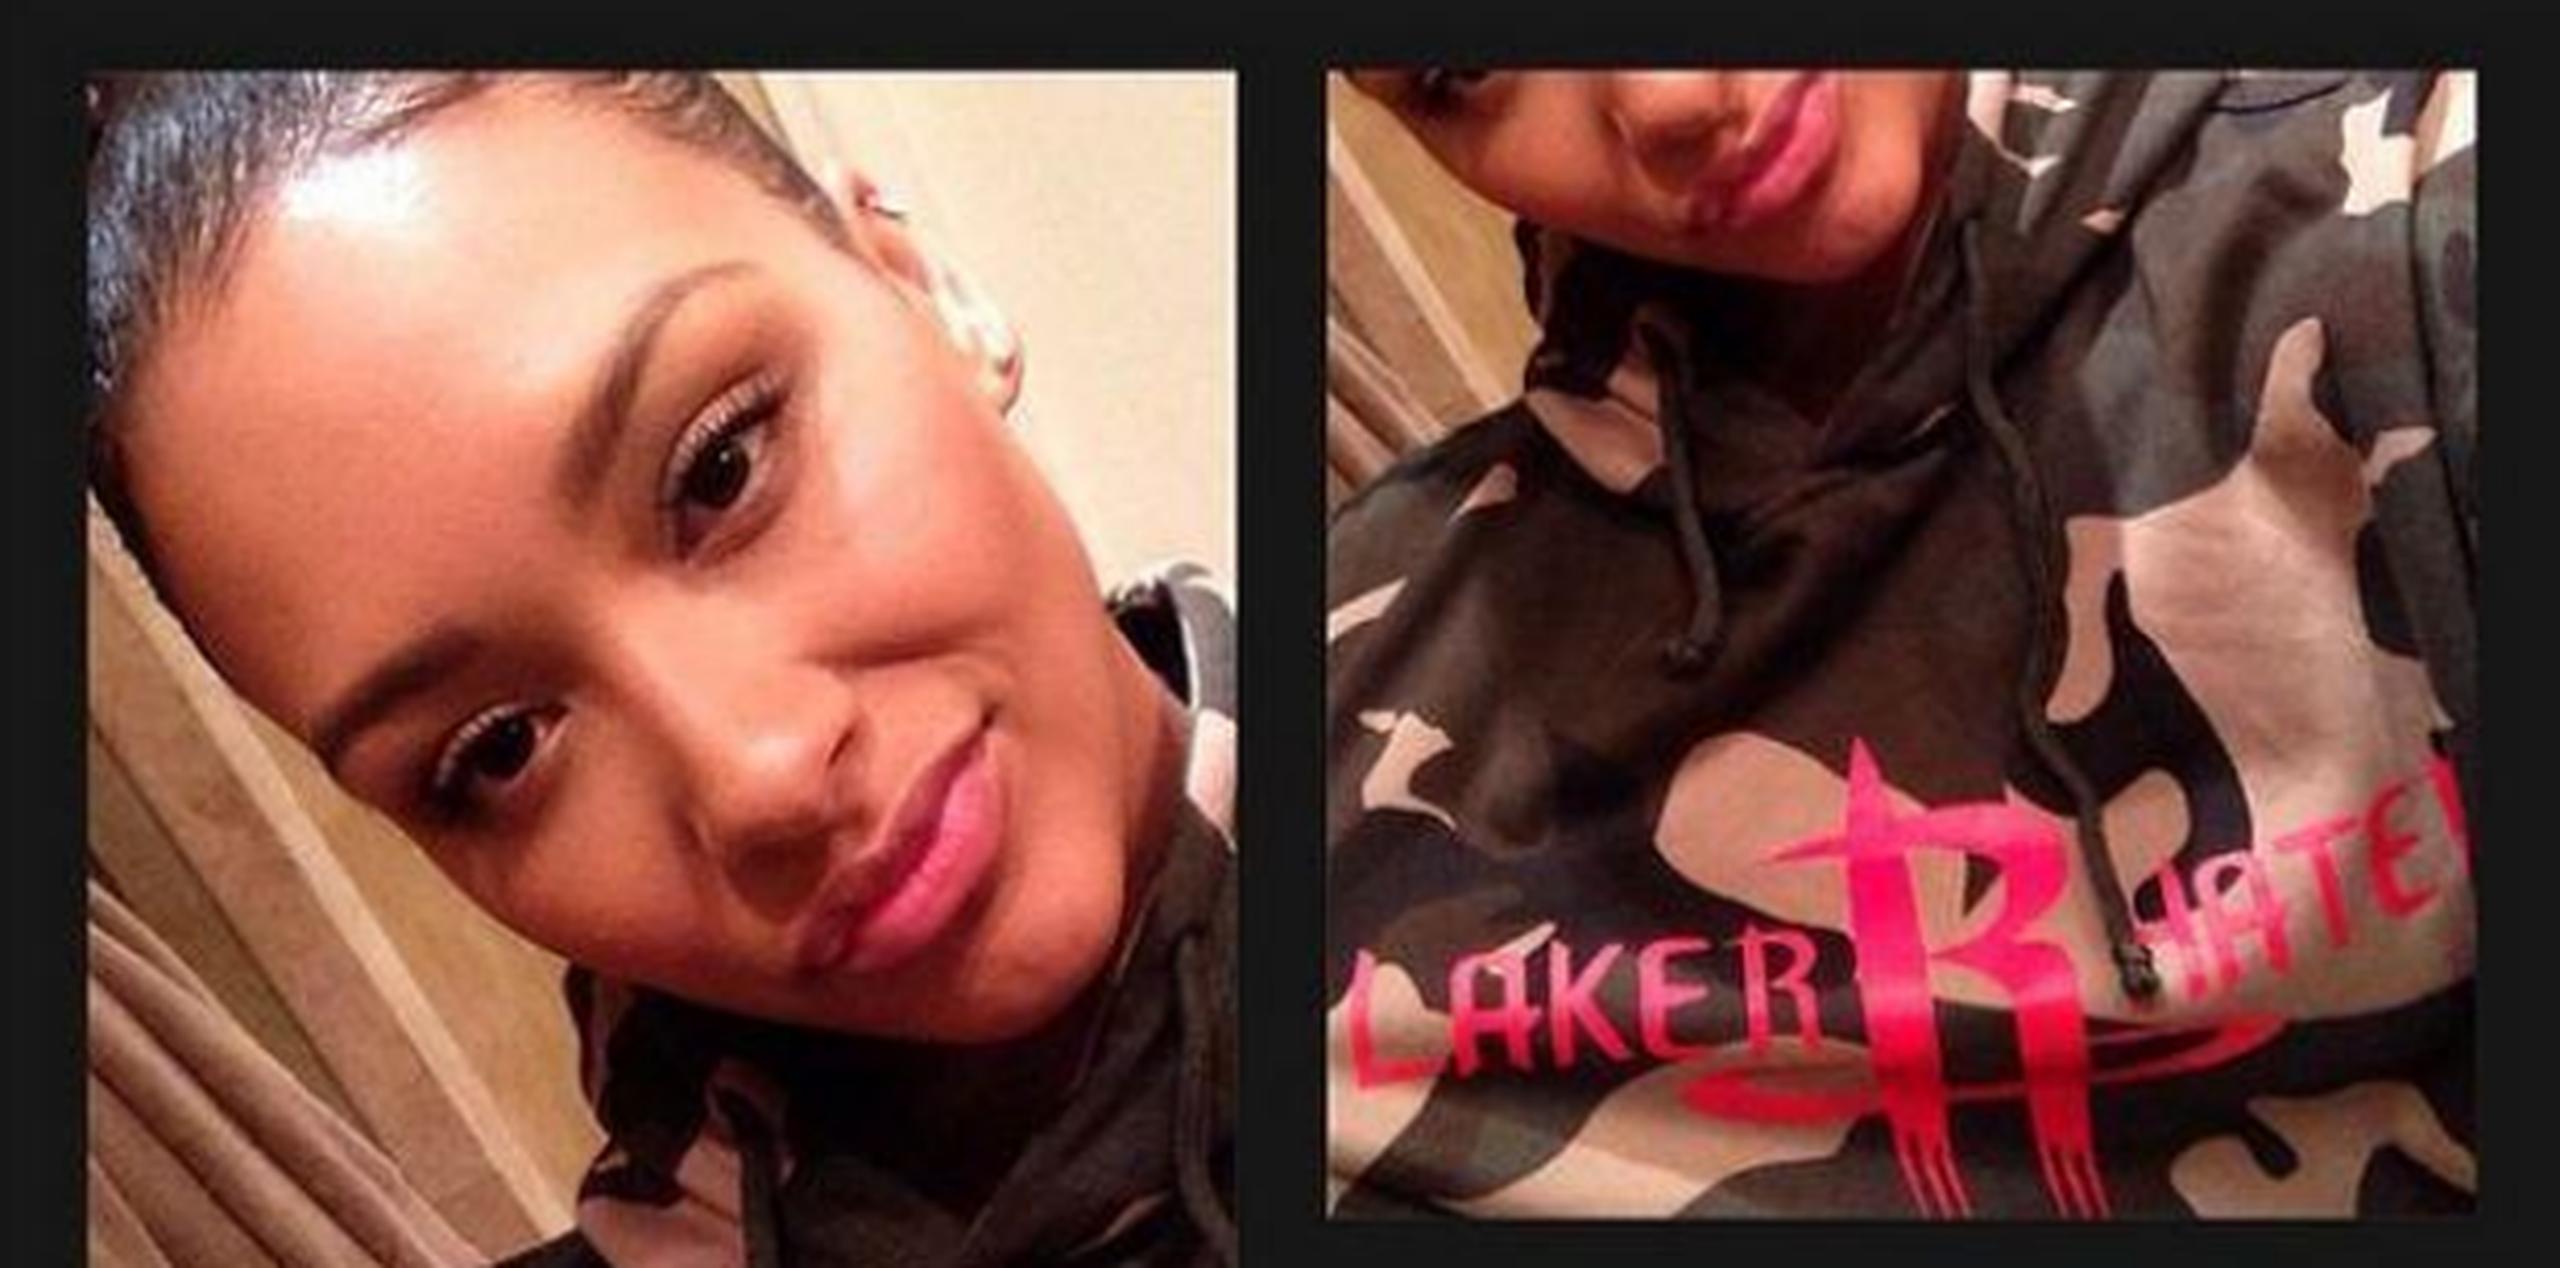 La cantante se tomó una foto con una camiseta que decía “Laker Hater” y la colocó en Instagram, pero posteriormente decidió borrarla tras recibir comentarios negativos por parte de fanáticos del equipo de Los Ángeles. (Instagram)